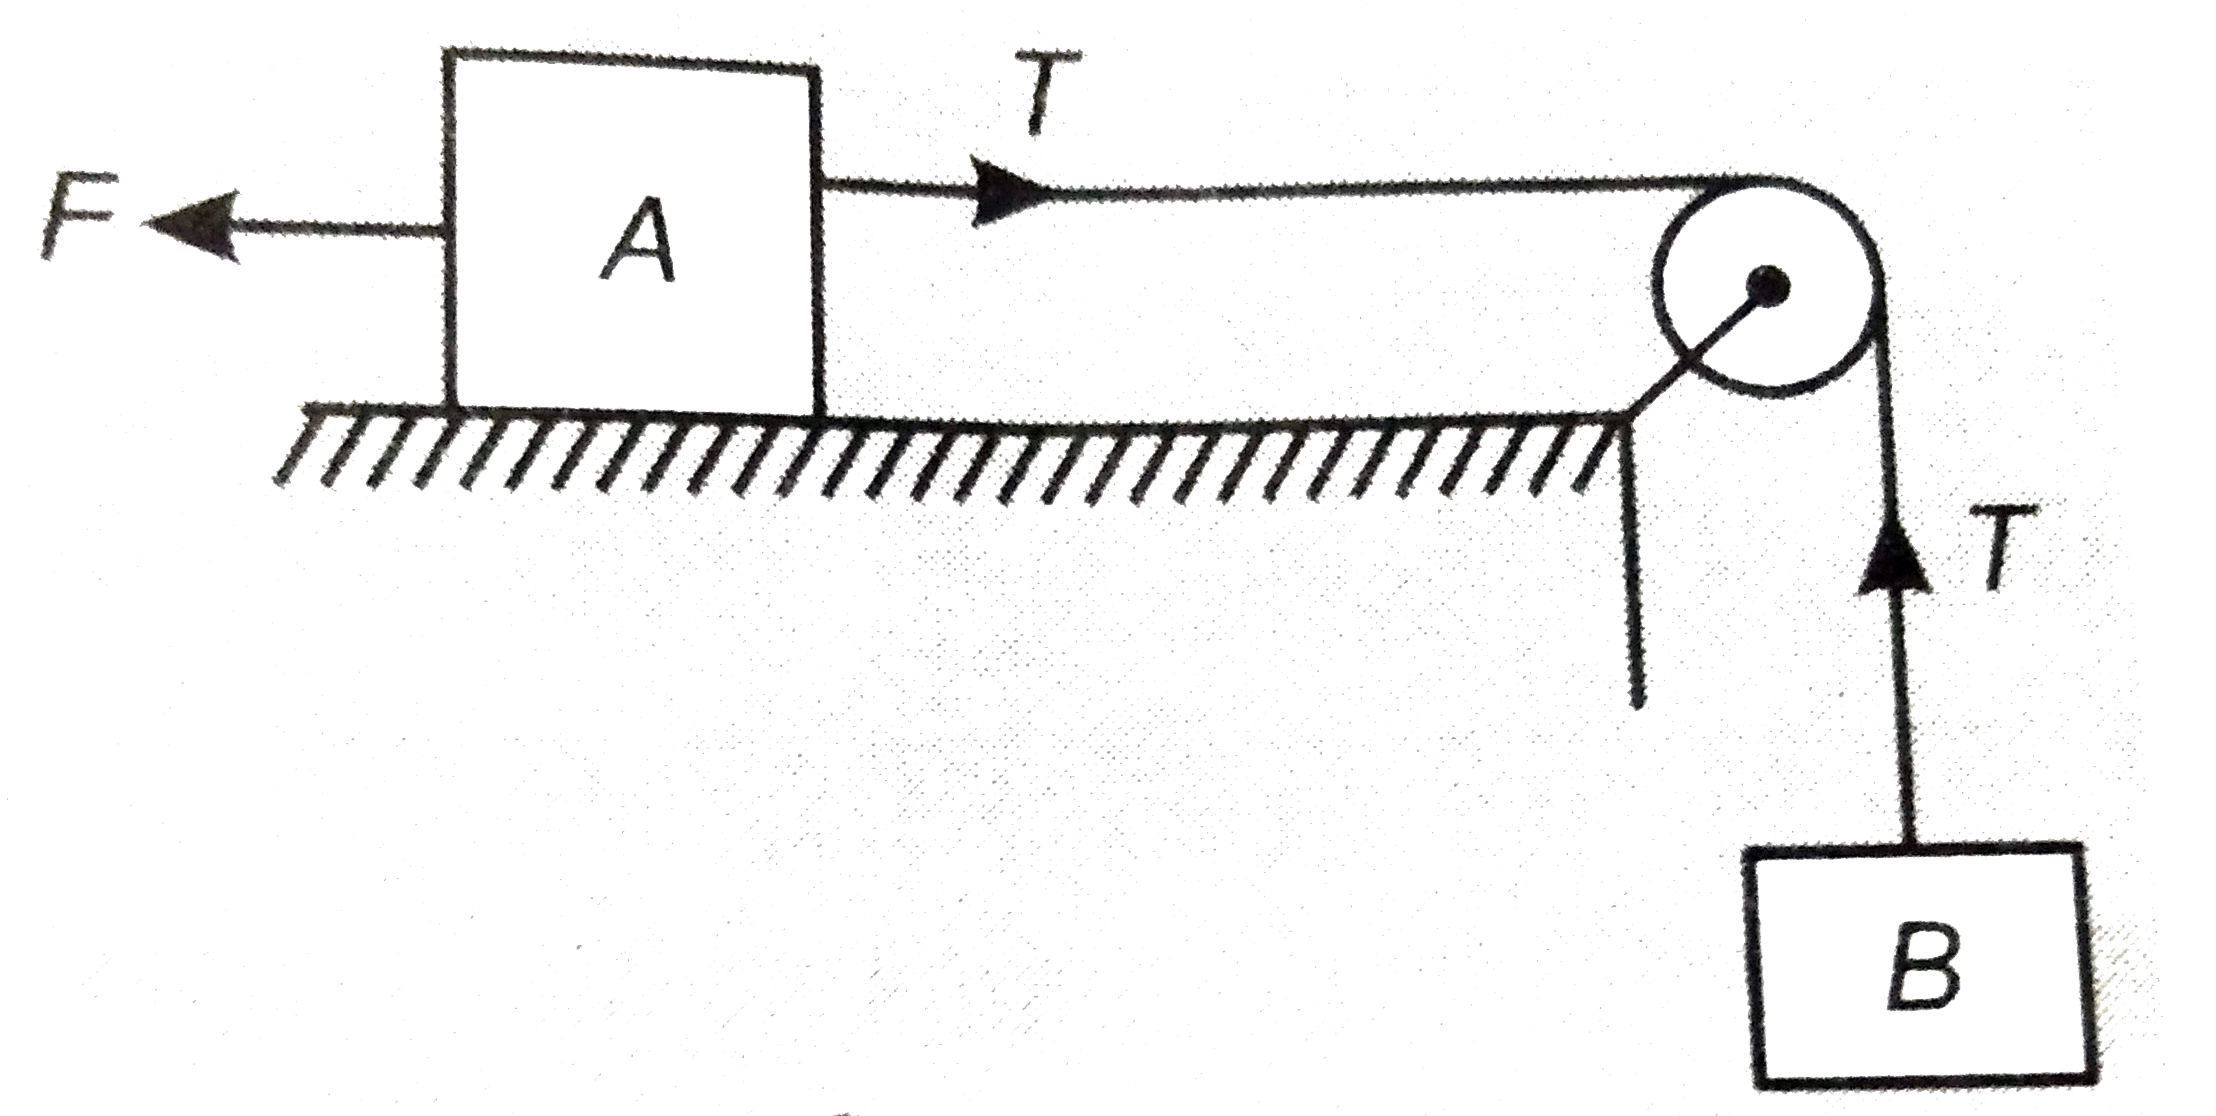 (A)संलग्न चित्र में ब्लॉक A जोकि क्षैतिज मेज पर रखा है पर बल F=0.1 किग्रा-भार चित्रानुसार लगया गया है। डोरी तथा घिरनी का भार नगण्य है। घिरनी घर्षर्णरहित है तथा मेज की सतह चिकनी है। प्रत्येक ब्लॉक का द्रव्यमान 0.2 किग्रा है। ब्लॉक A तथा B का त्वरण ज्ञात कीजिए।    (B) डोरी में तनाव ज्ञात कीजिए।